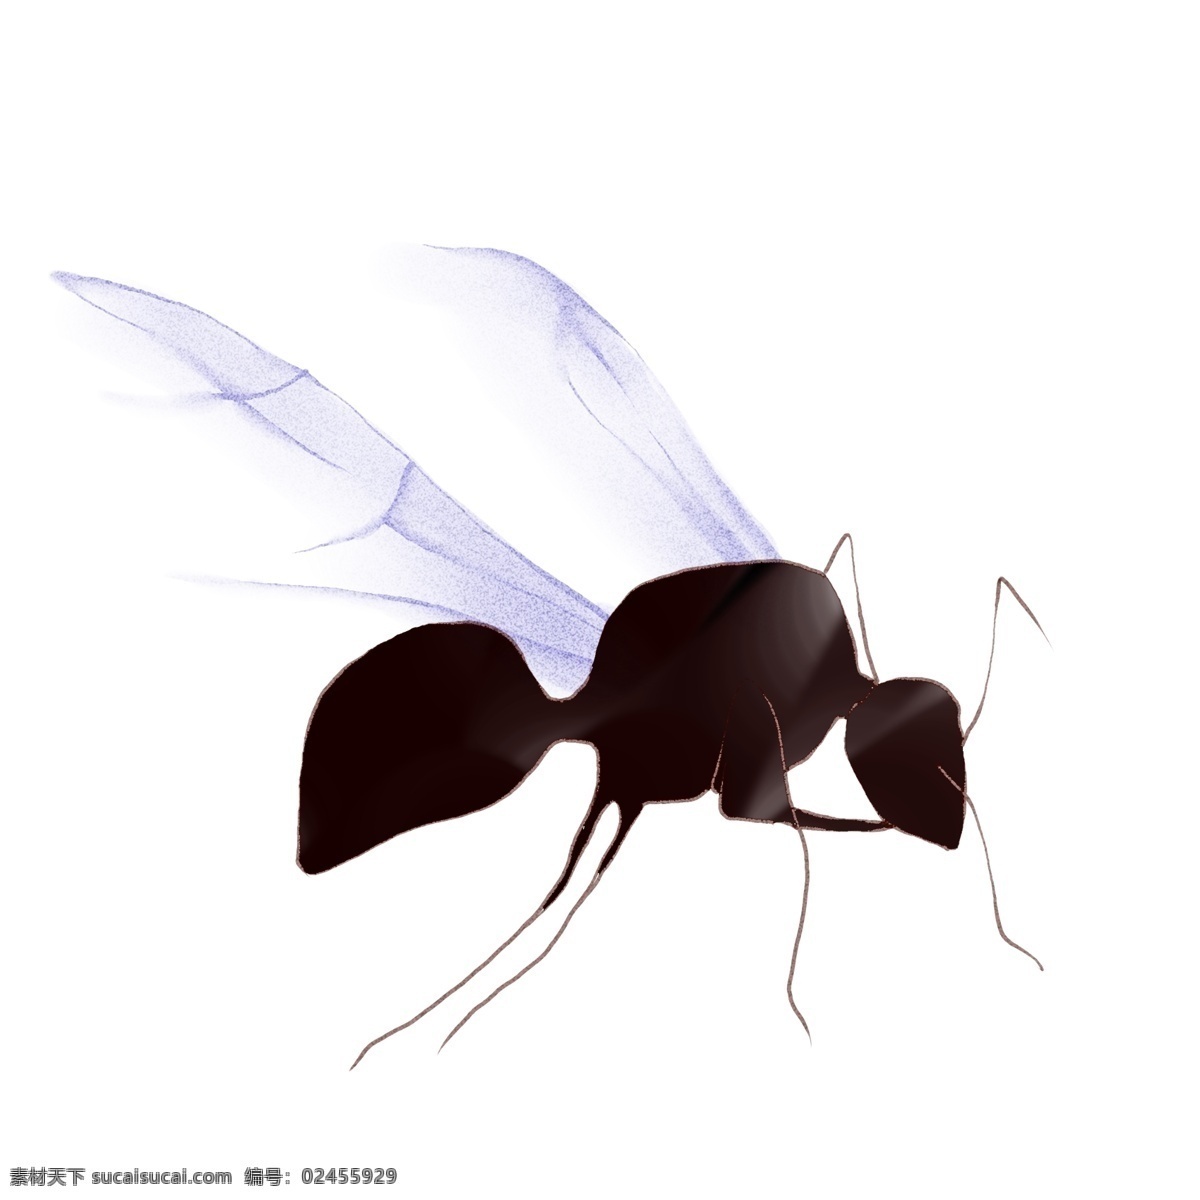 手绘 飞 蚁 原创 商用 元素 动物 日常 简约 小动物 蚂蚁 飞蚁 板绘 水彩 平涂